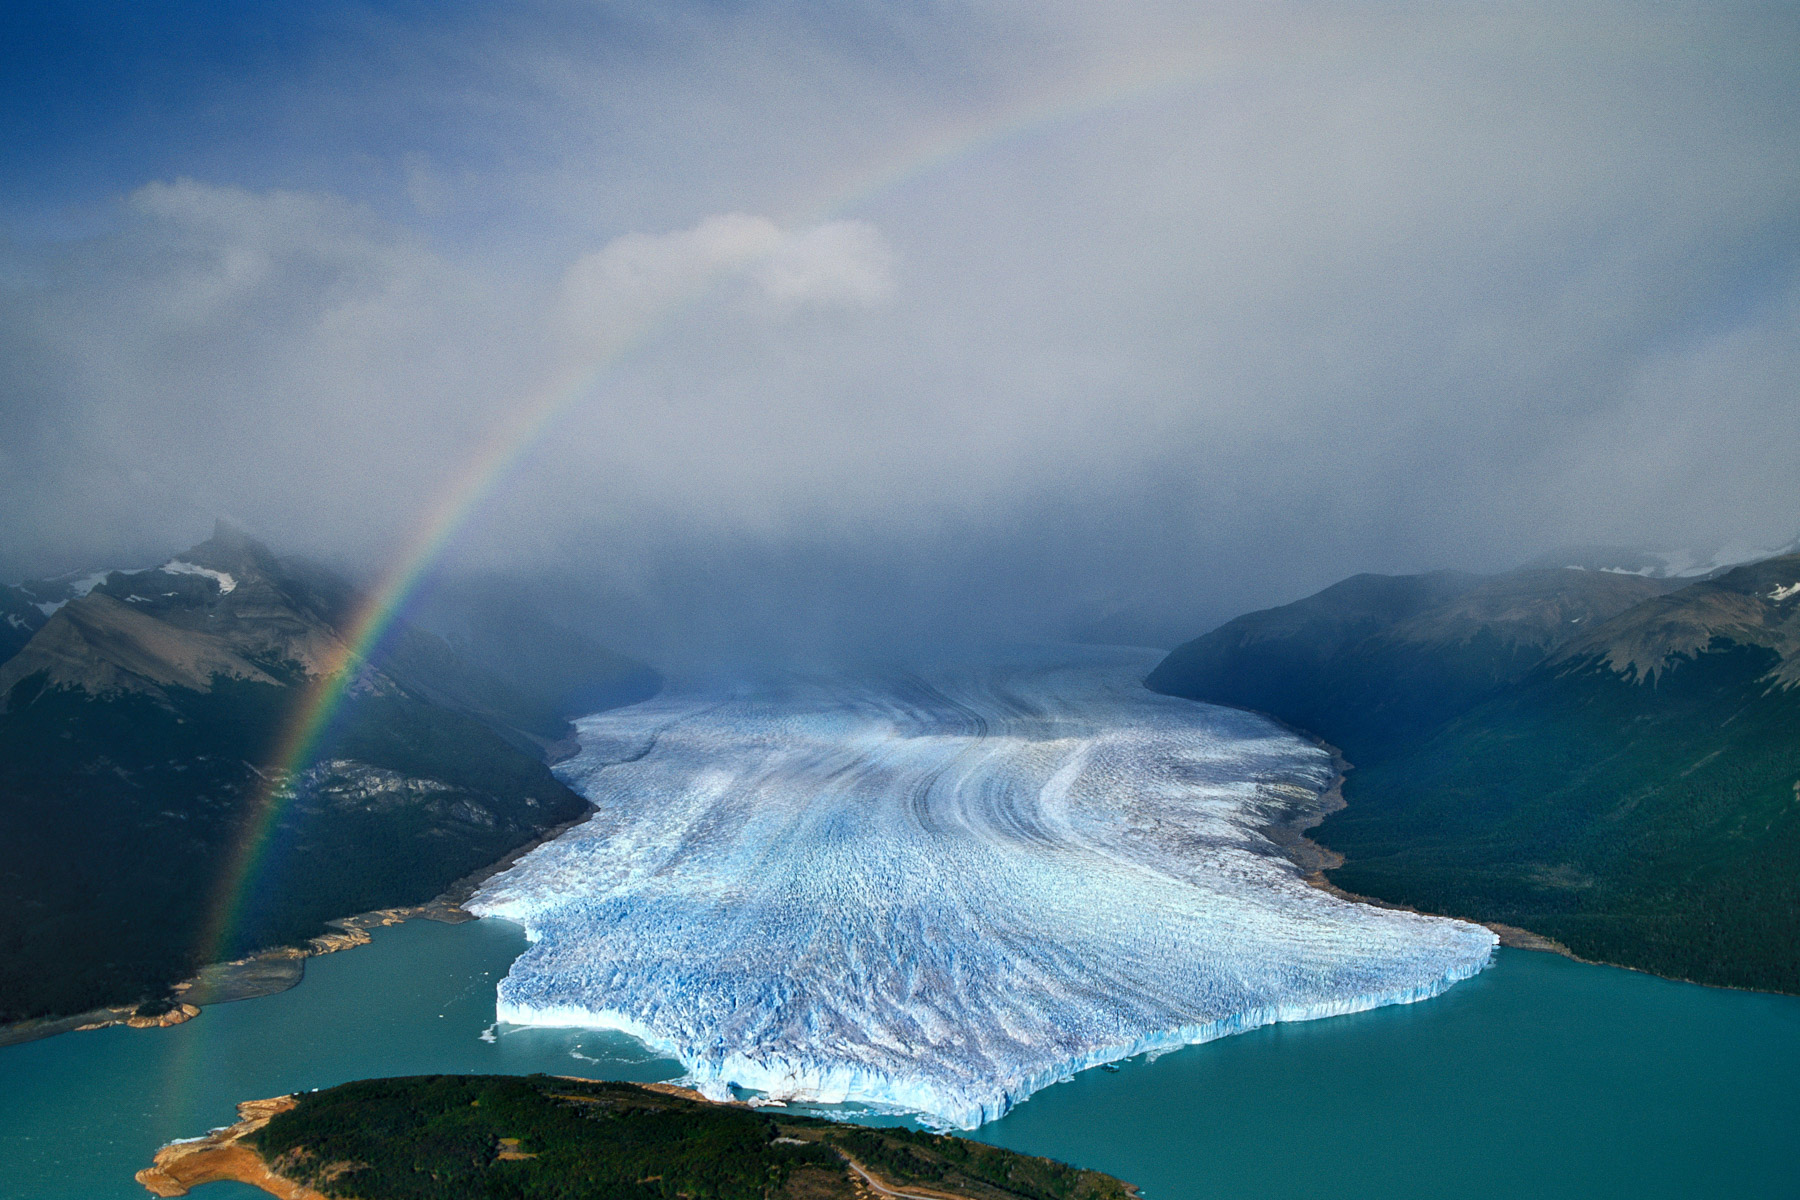 EXPO TVDC 055 Perito Moreno glacier, Santa Cruz Province, Argentina (50°31' S – 73°06' W).